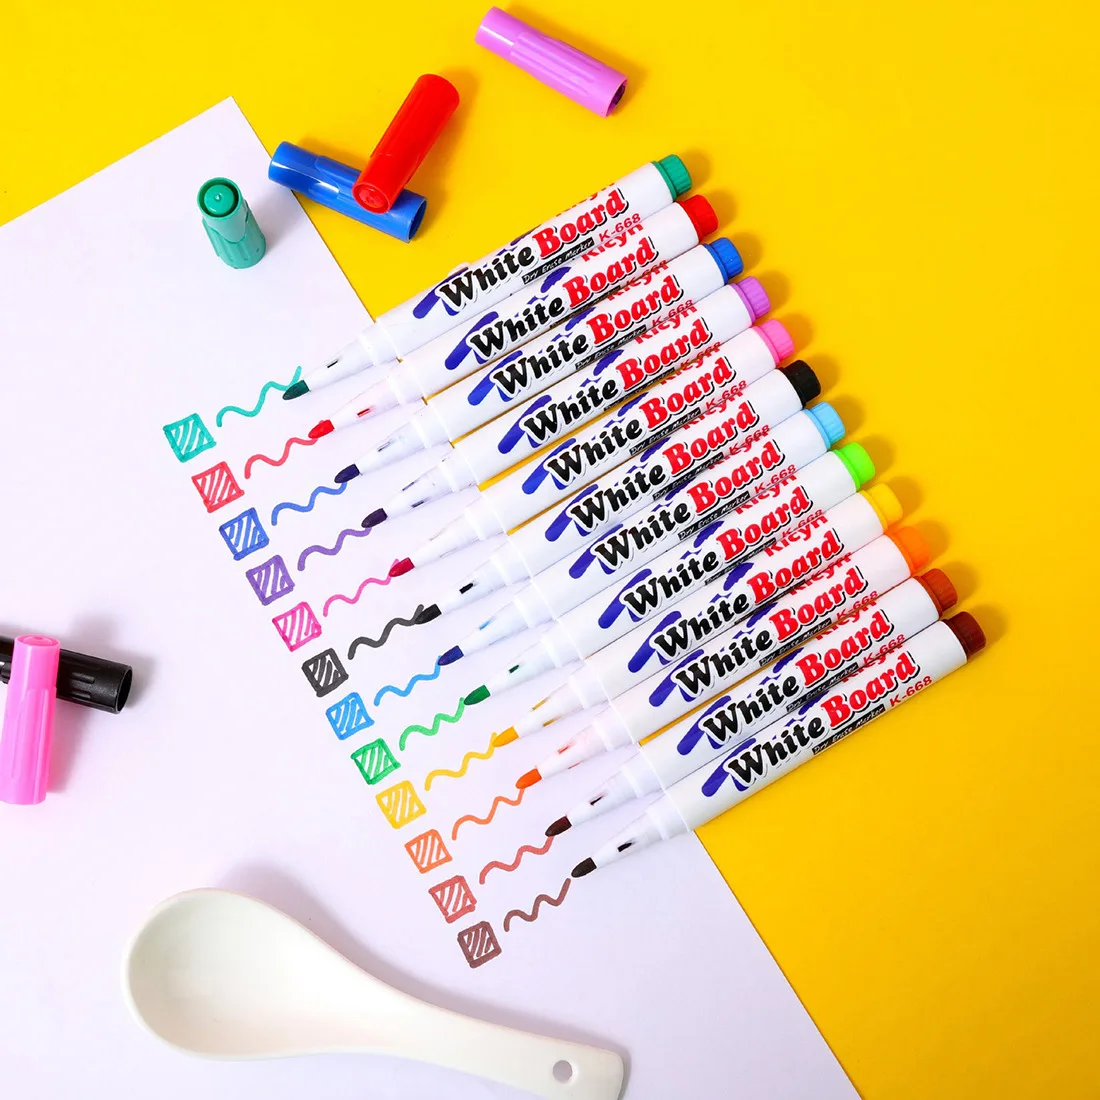 Rotuladores mágicos para pintar al agua, marcadores coloridos de tinta flotante, bolígrafos de agua para garabatos, juguetes de educación temprana Montessori para niños